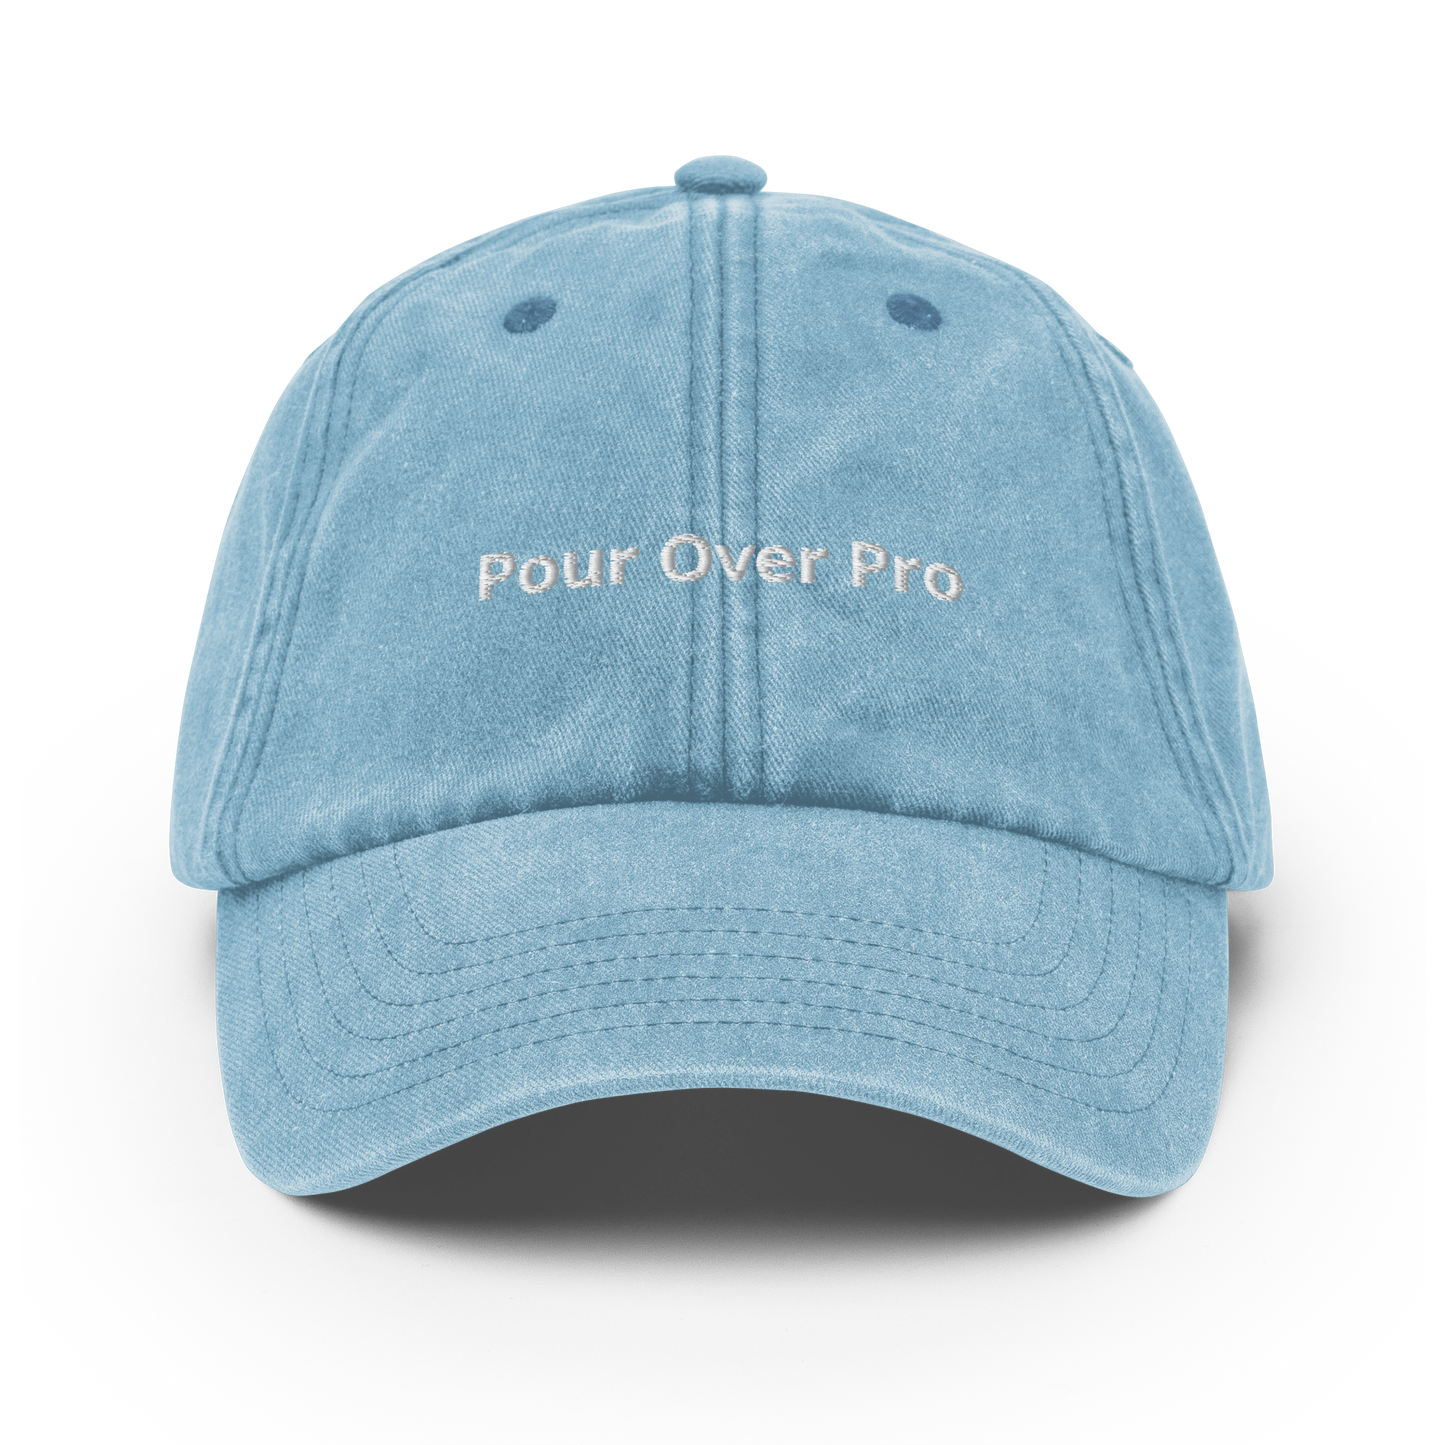 Pour Over Pro - Vintage Hat